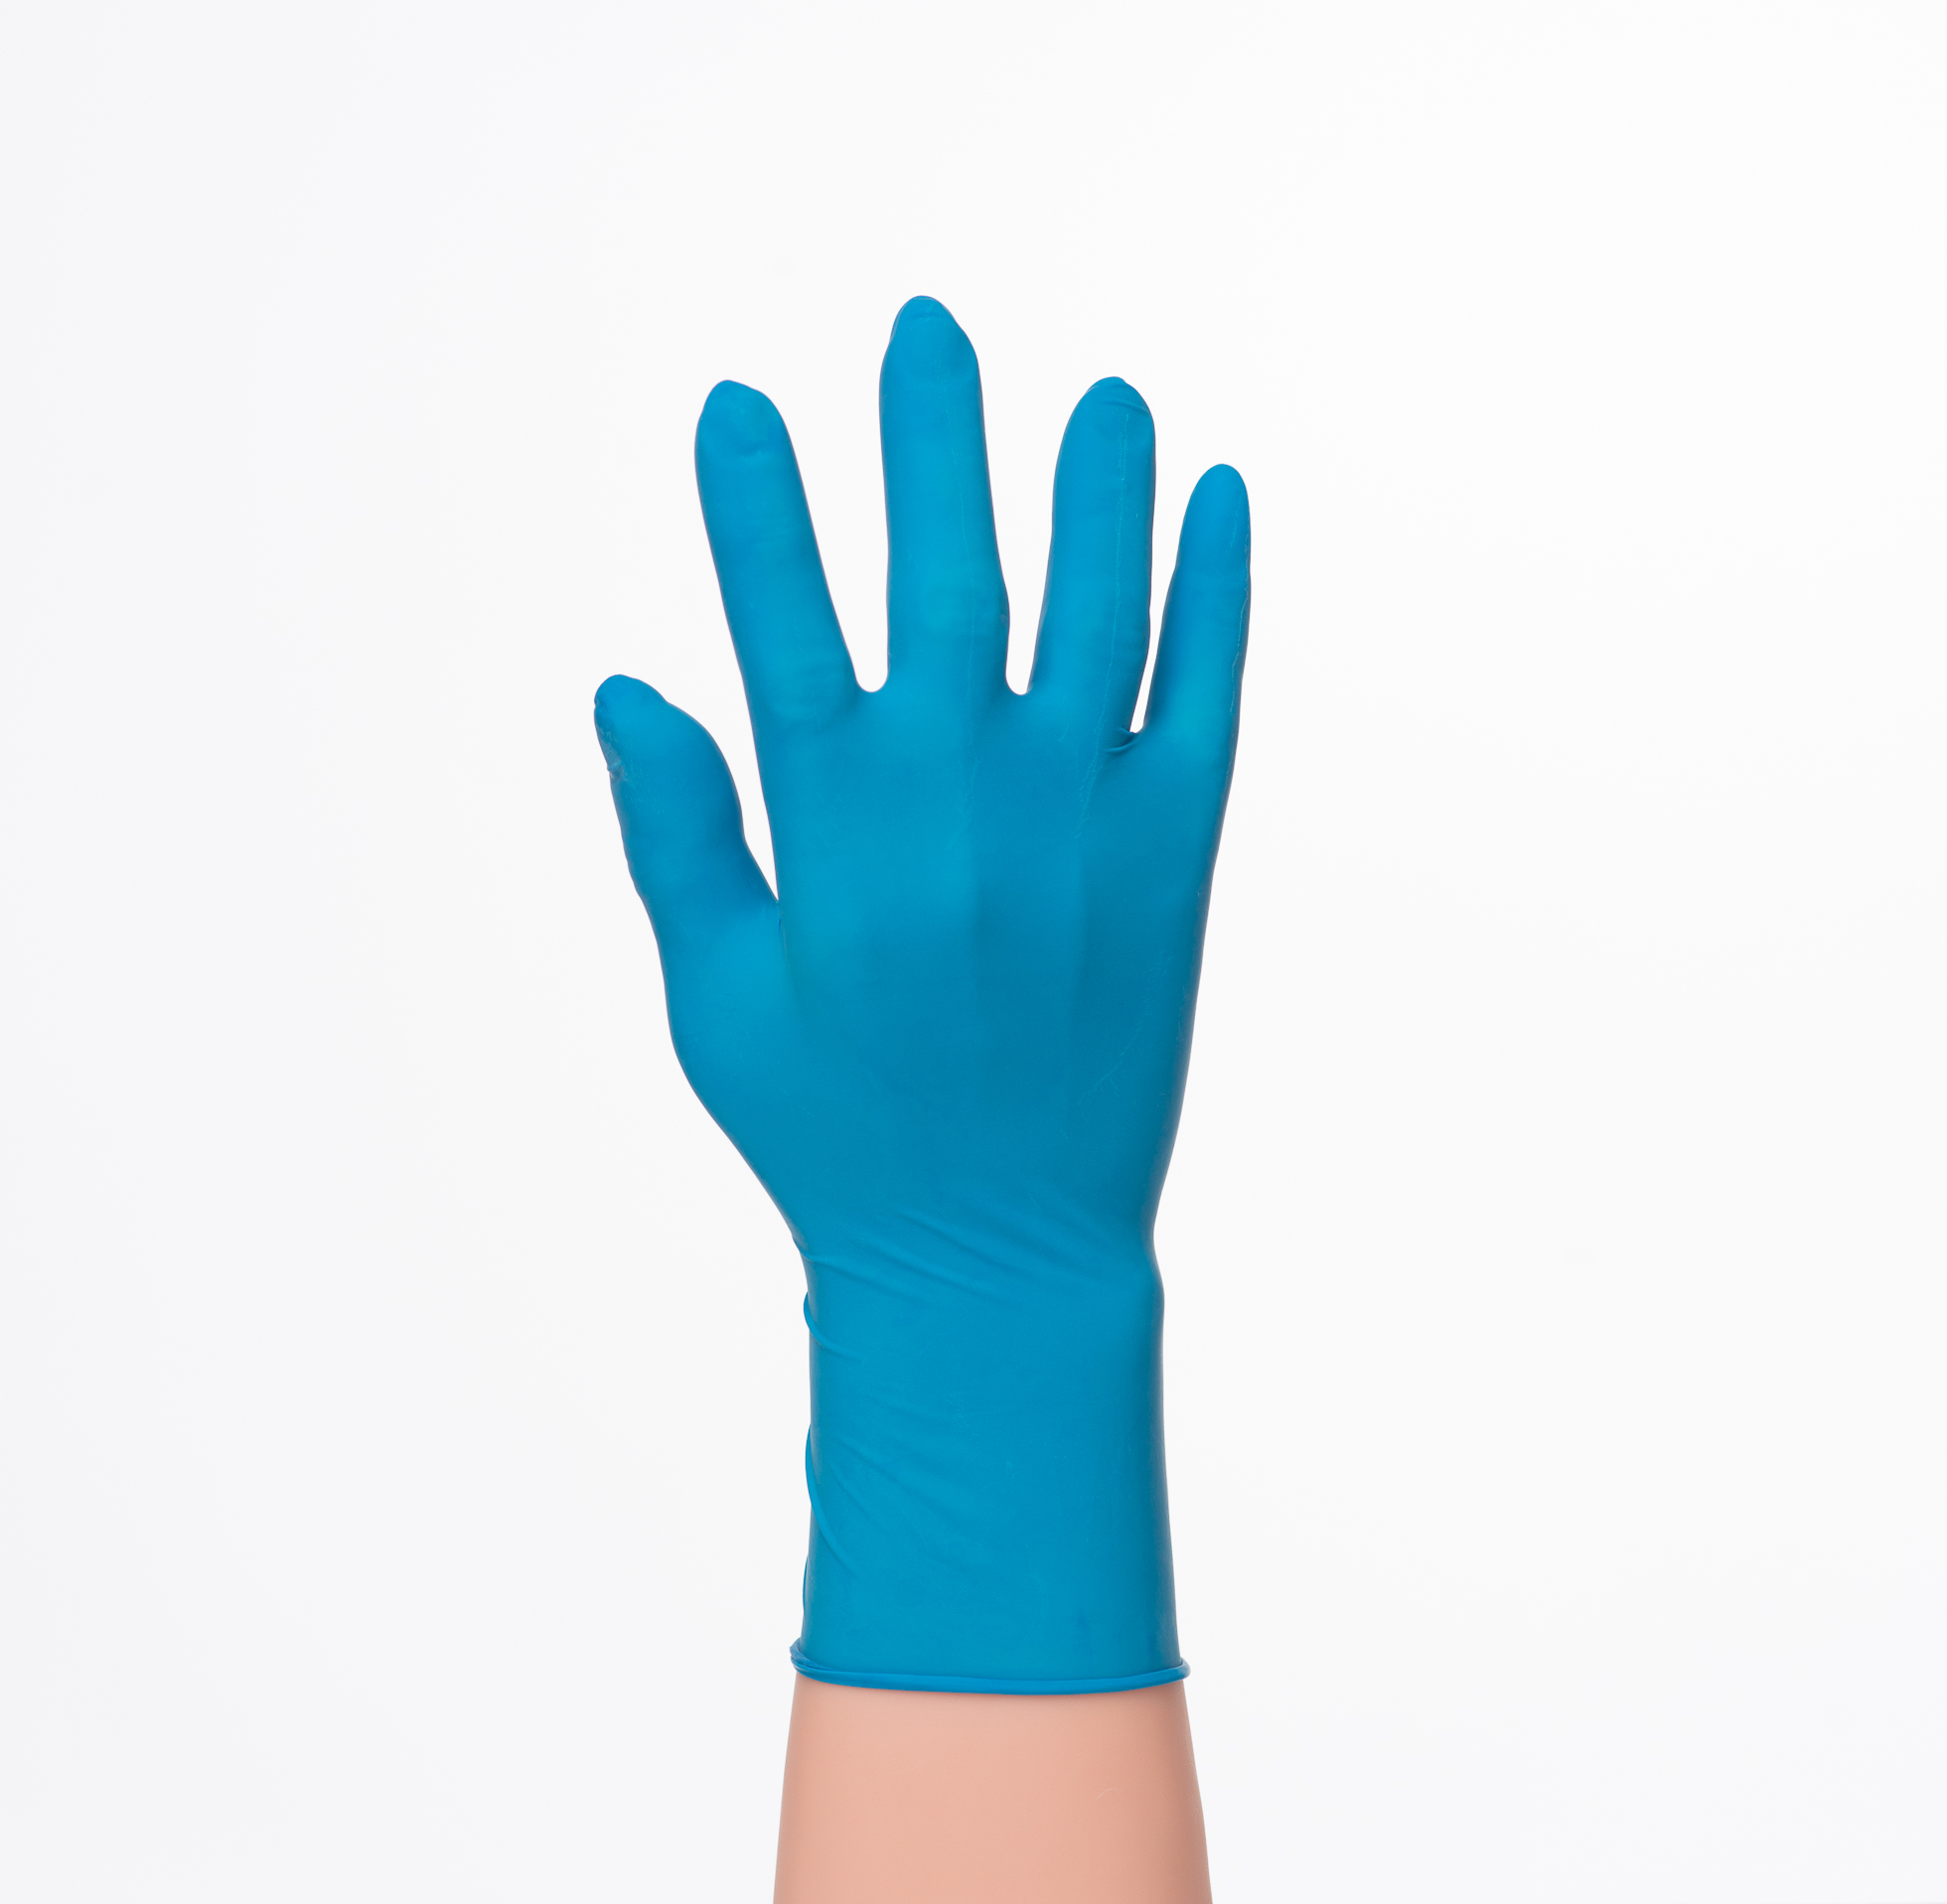 ถุงมือยางลาเท็กซ์สีฟ้าแบบมีแป้ง Kenko ถุงมือ Kenko มีแป้ง ถุงมือยางลาเท็กซ์สีฟ้า 100 ชิ้น ถุงมือแพทย์ ถุงมือลาเท็กซ์